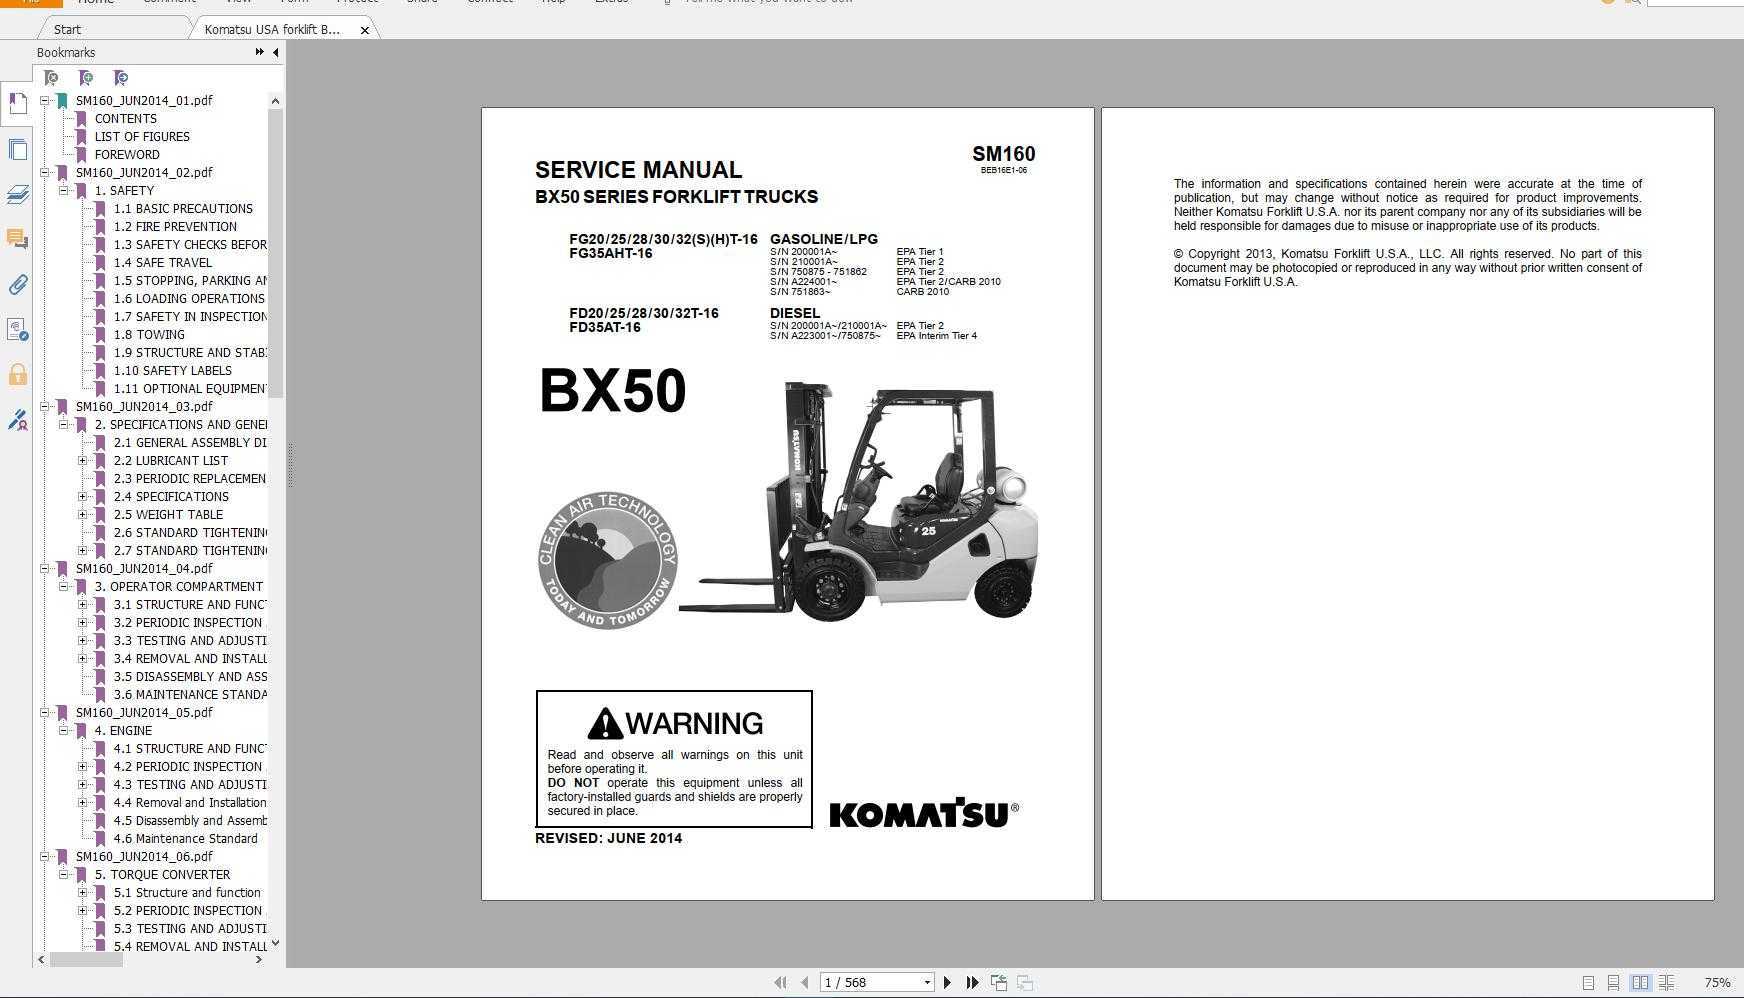 Komatsu css 2014 full set manual | auto repair manual forum - heavy equipment forums - download repair & workshop manual